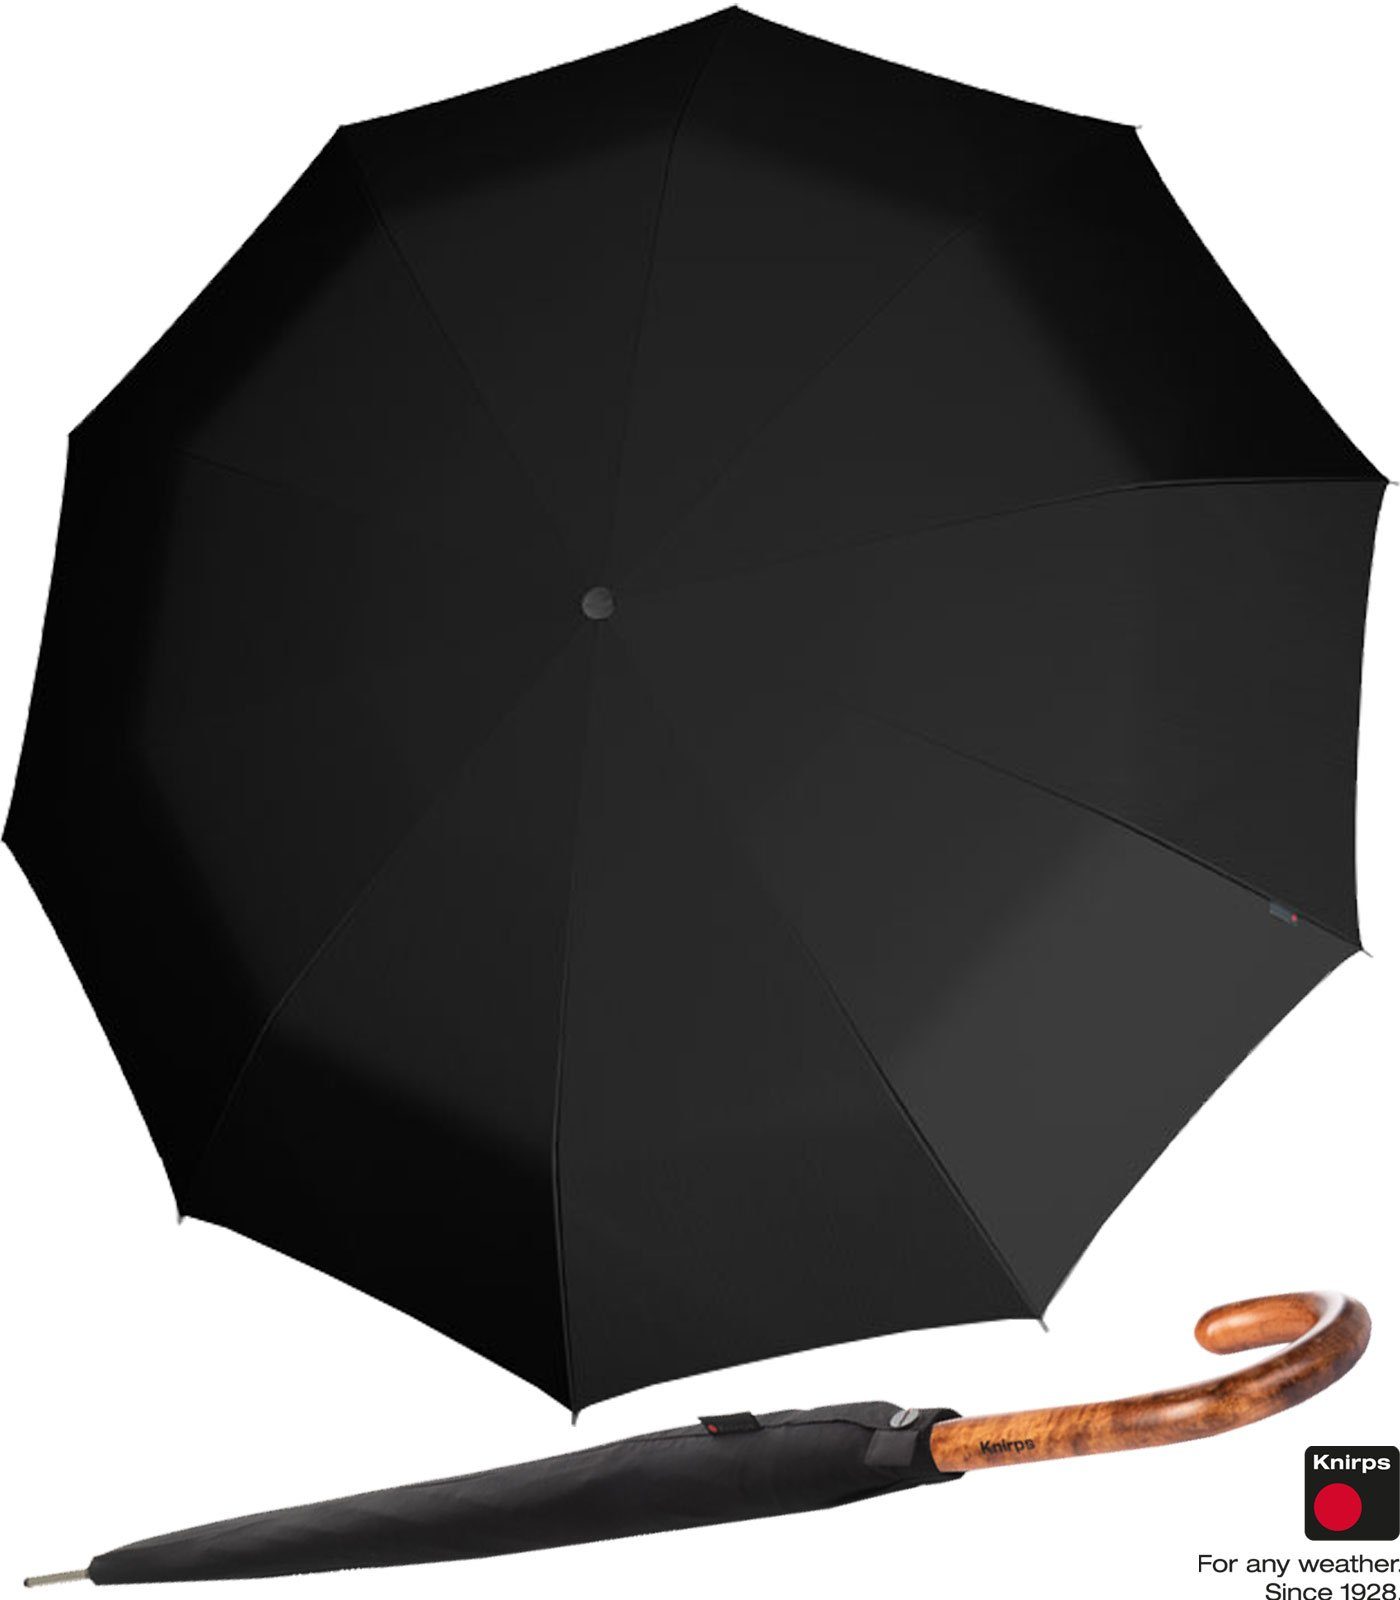 Knirps® Langregenschirm großer, stabiler Schirm mit Auf-Zu-Automatik, sehr  edel durch den Rundhakengriff aus Holz